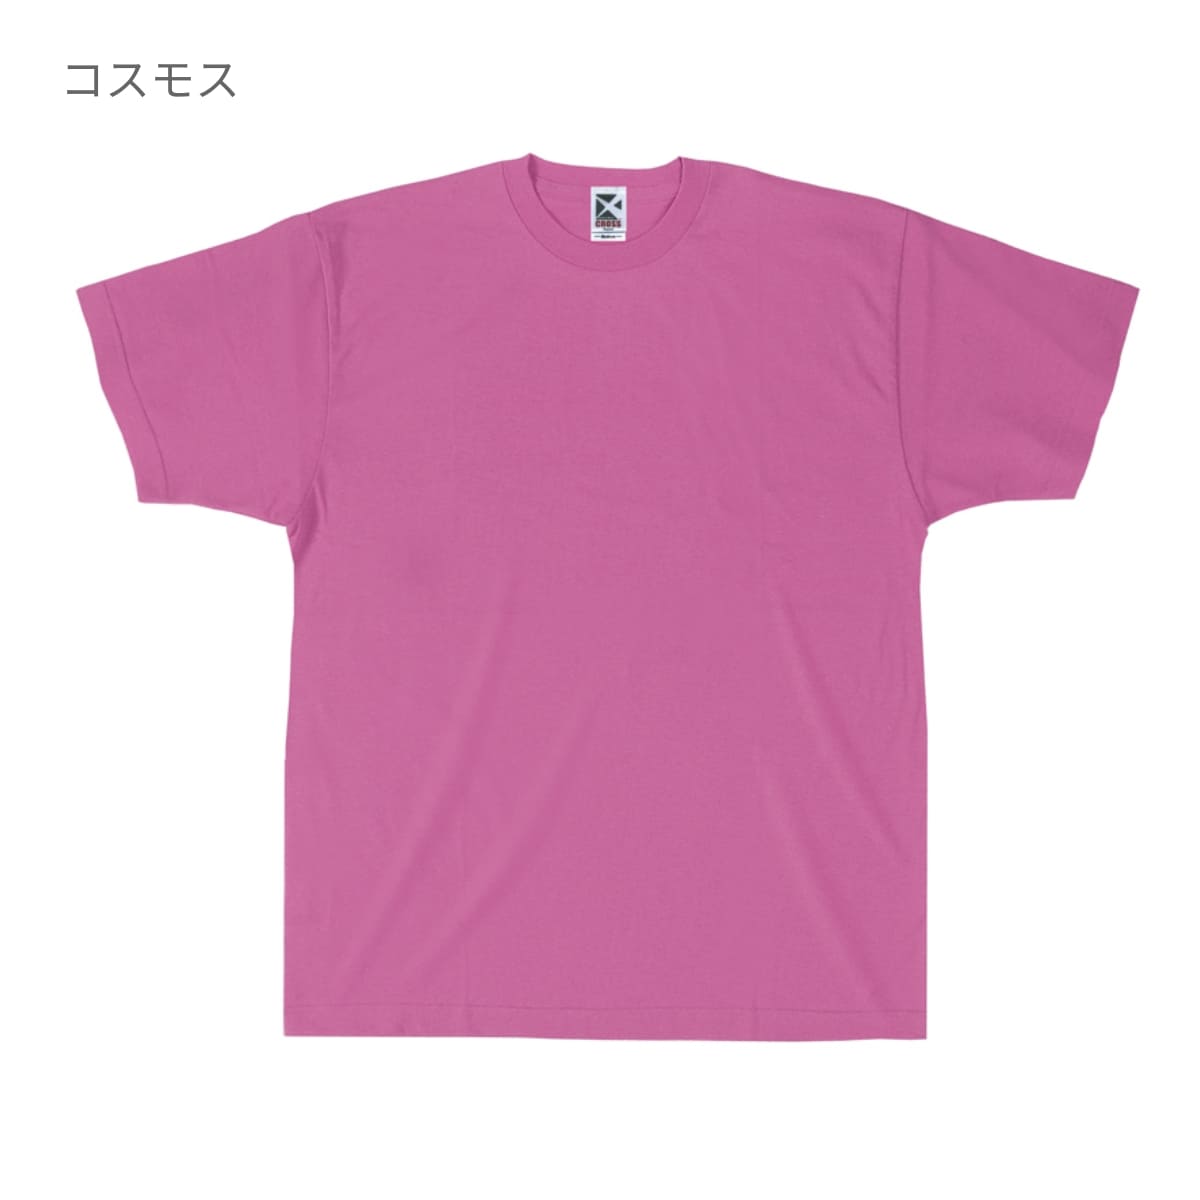 レギュラーコットンTシャツ | ビッグサイズ | 1枚 | CR1102 | ヘザーグレー